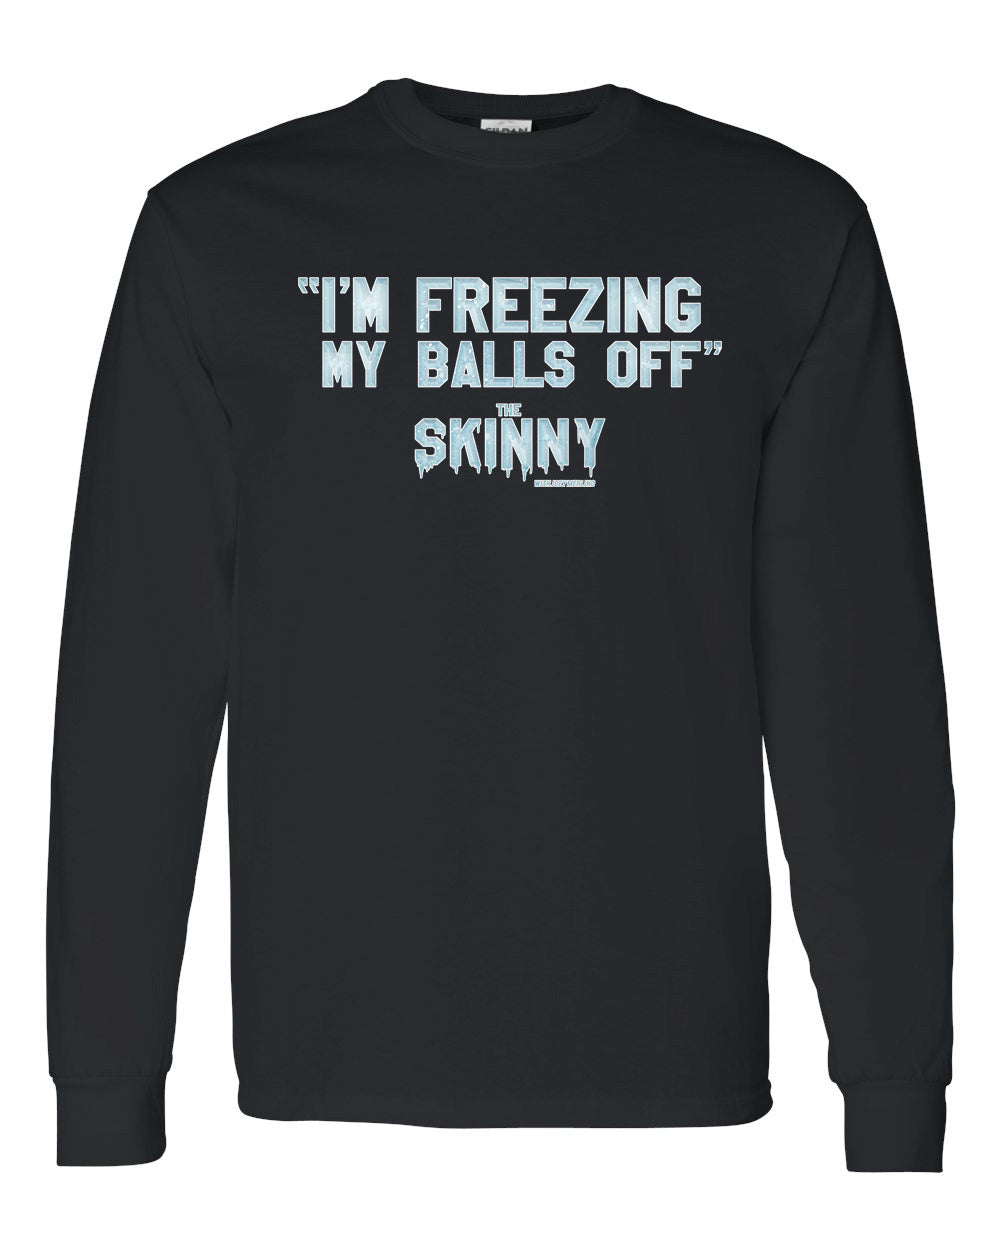 The Skinny "I'm Freezing My Balls Off" Clothing